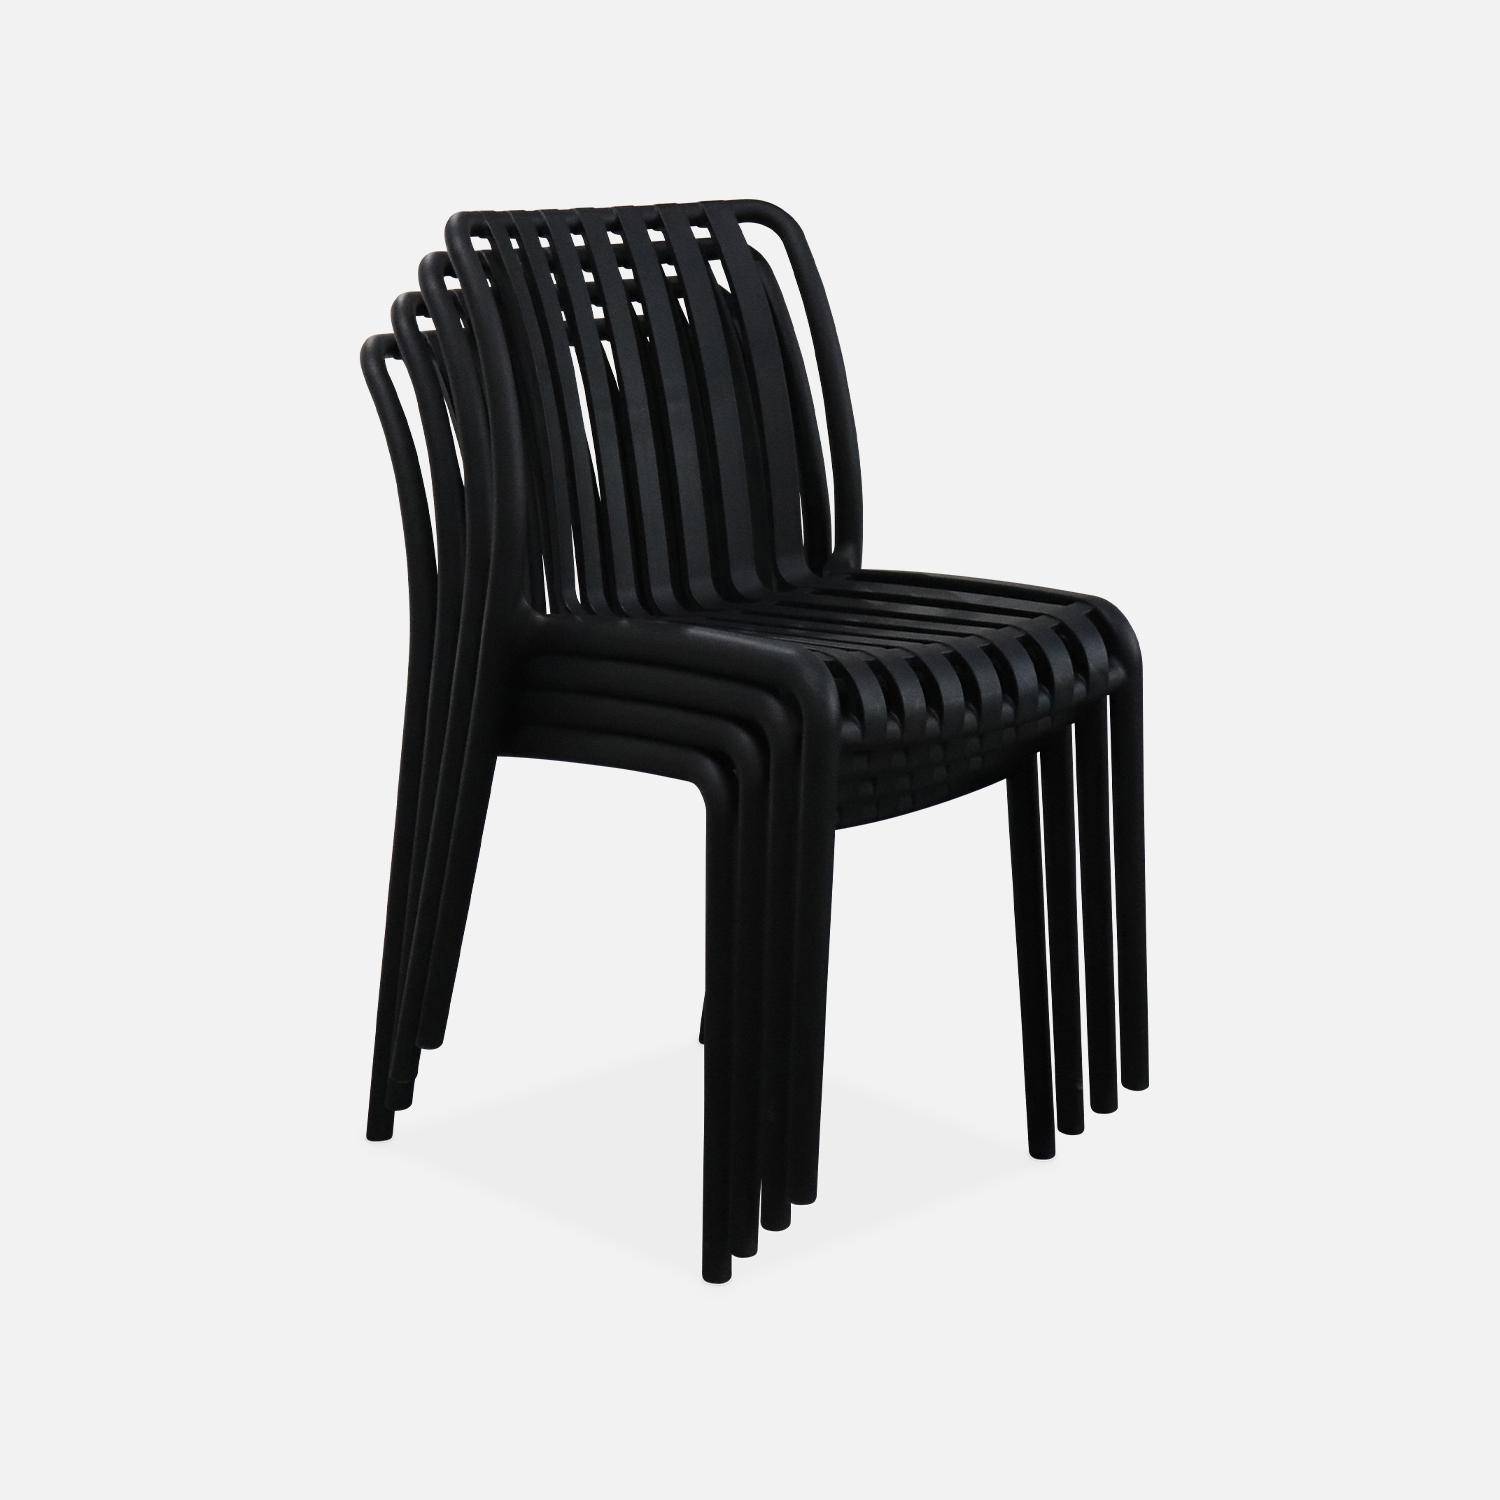 Lot de 4 chaises de jardin en plastique noir, empilables, déjà montées Photo3